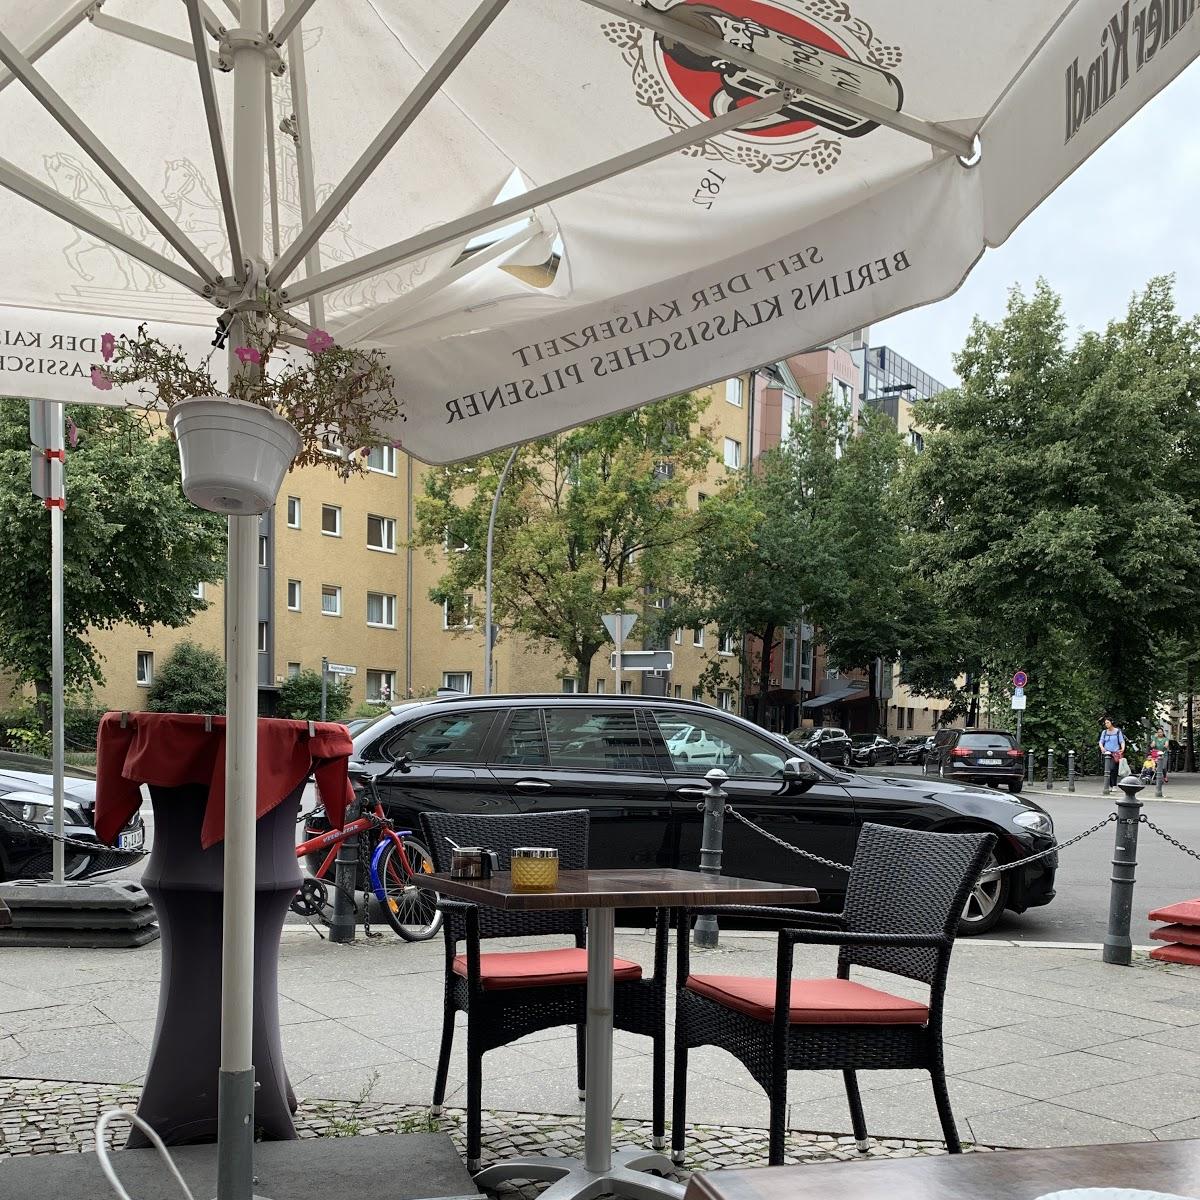 Restaurant "Persisches Restaurant  Kourosh" in Berlin